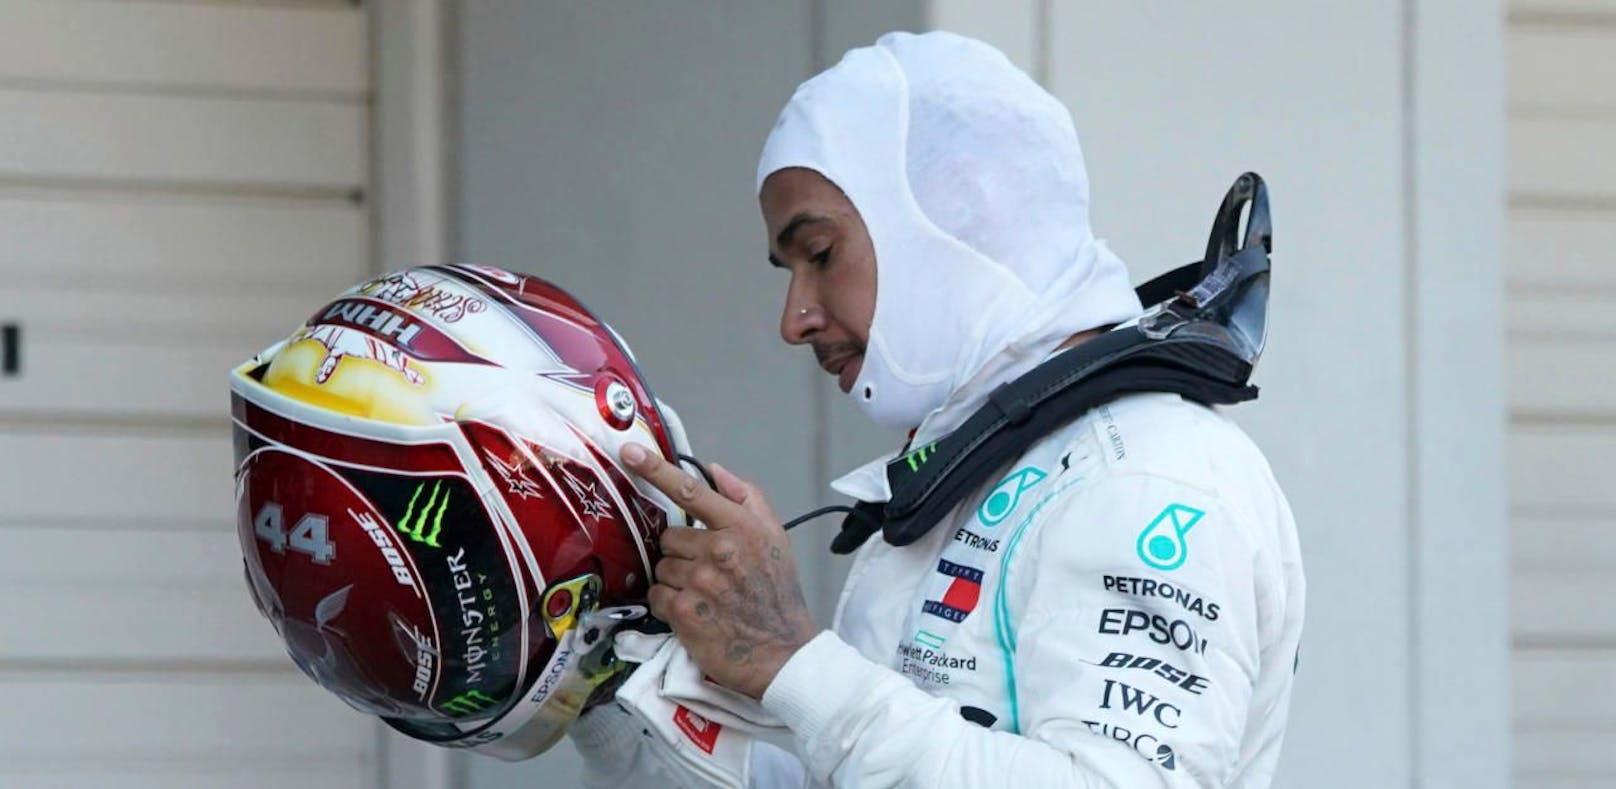 Lewis Hamilton war nach dem dritten Platz in Suzuka nicht restlos zufrieden.